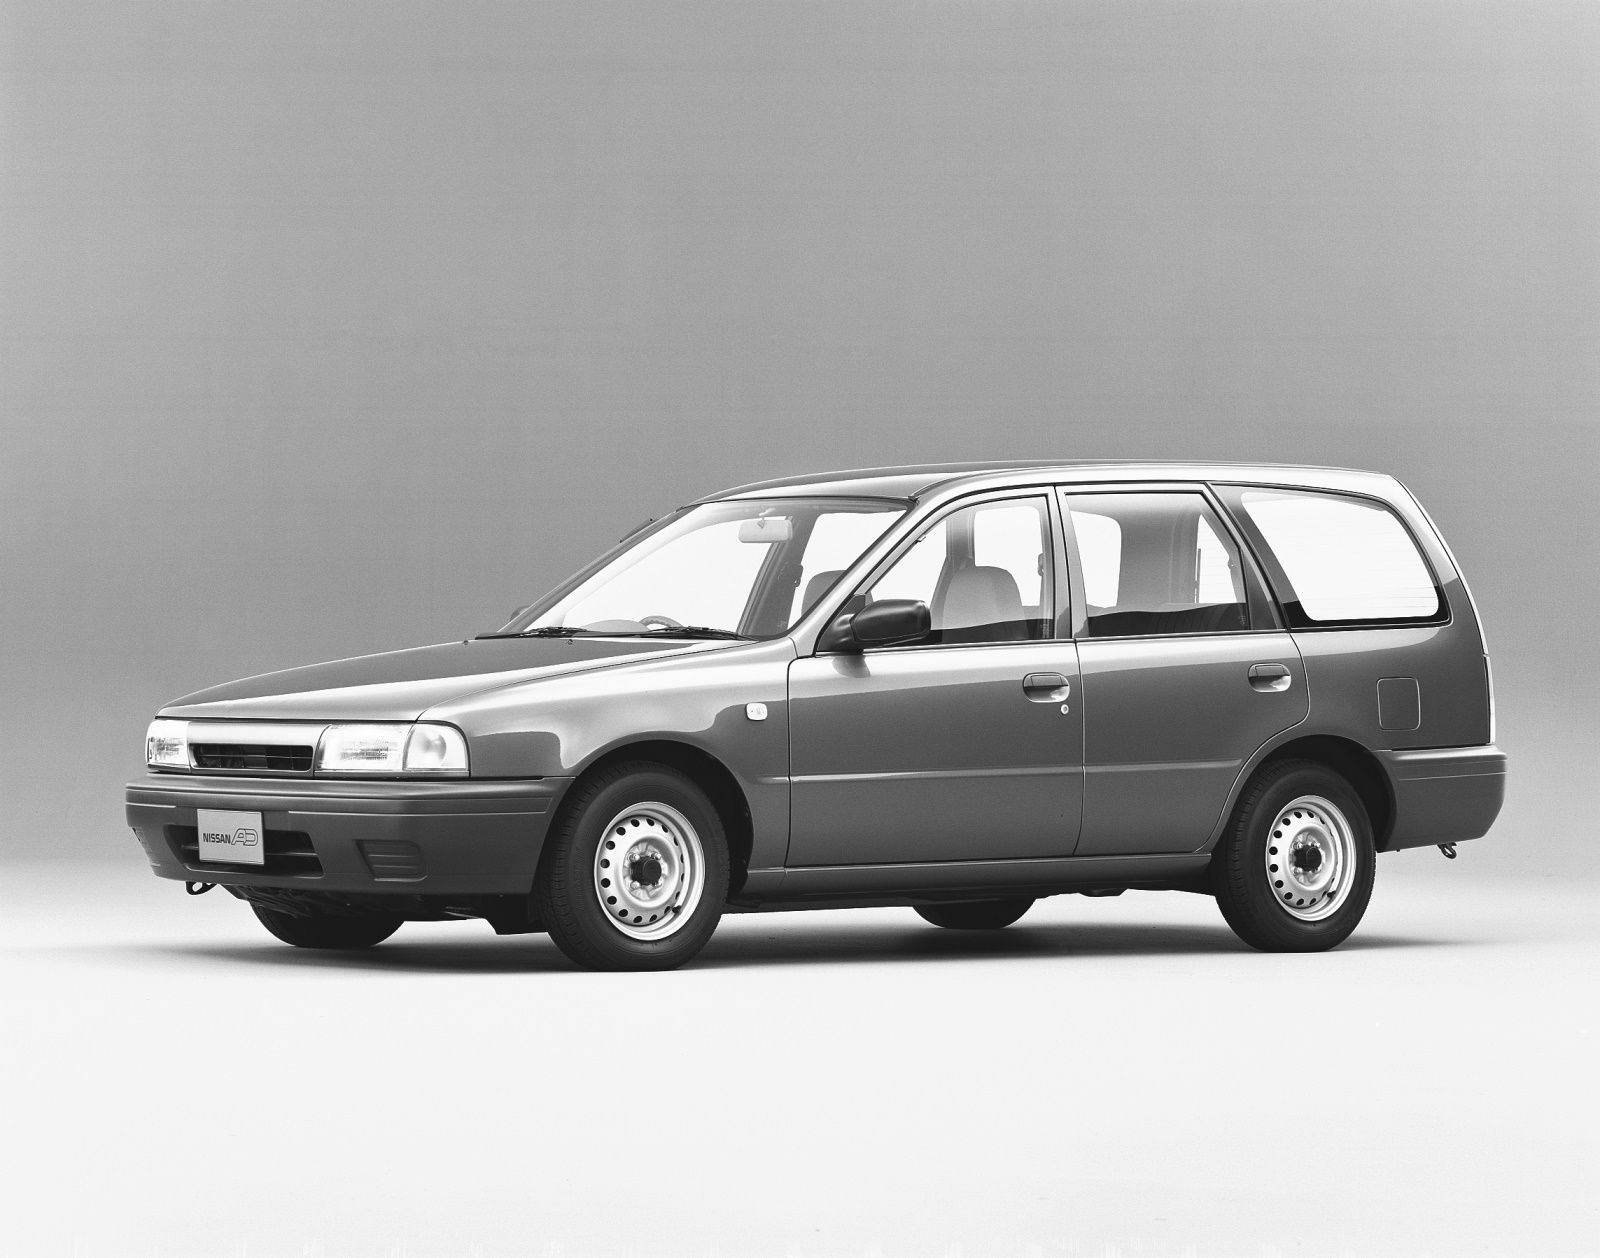 Купить 10 й. Nissan.ad,1990. Ниссан Санни 1990 универсал. Nissan ad y10. Ниссан ад 1990 универсал.